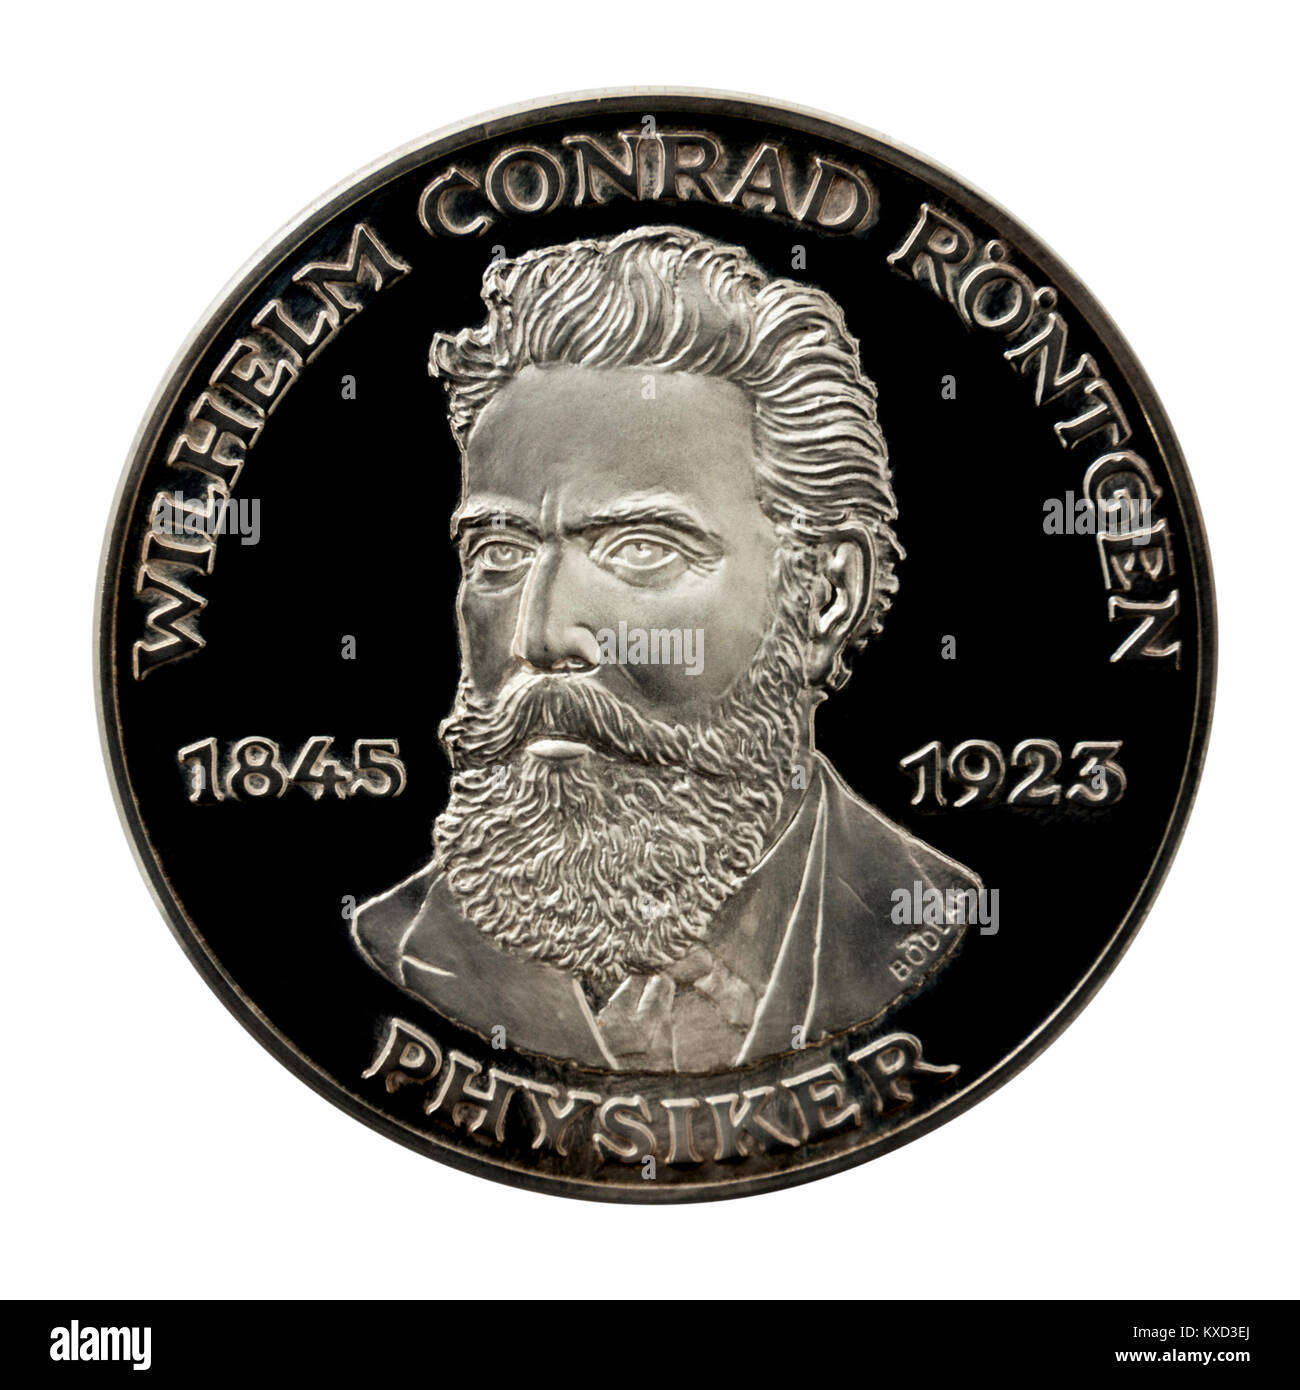 99,9% Beweis Silber Medaillon mit Wilhelm Conrad Röntgen, der berühmten deutschen Erfinder der X-Strahlen. Stockfoto